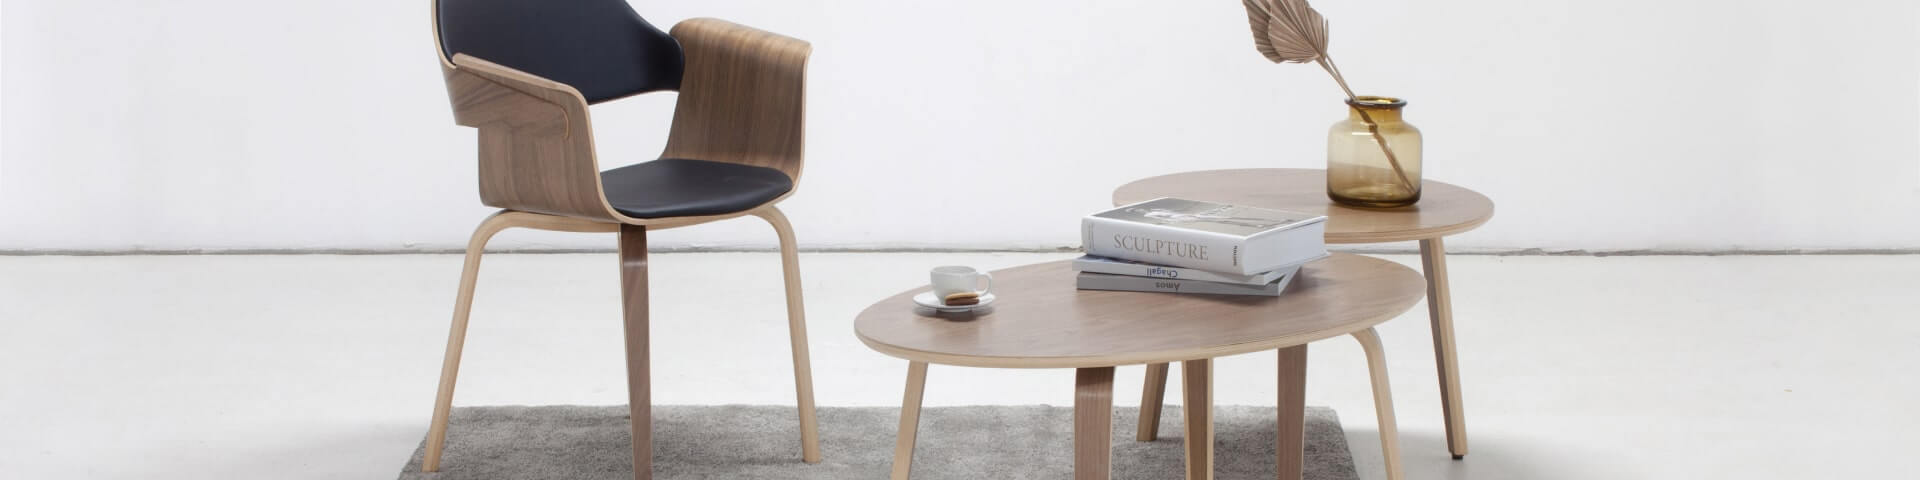 Egy skandináv tölgyfa étkezőasztal 6 székkel és 1 tablettartós papíradagolóval, amelyek stílusos és meghitt étkezőteret teremtenek.